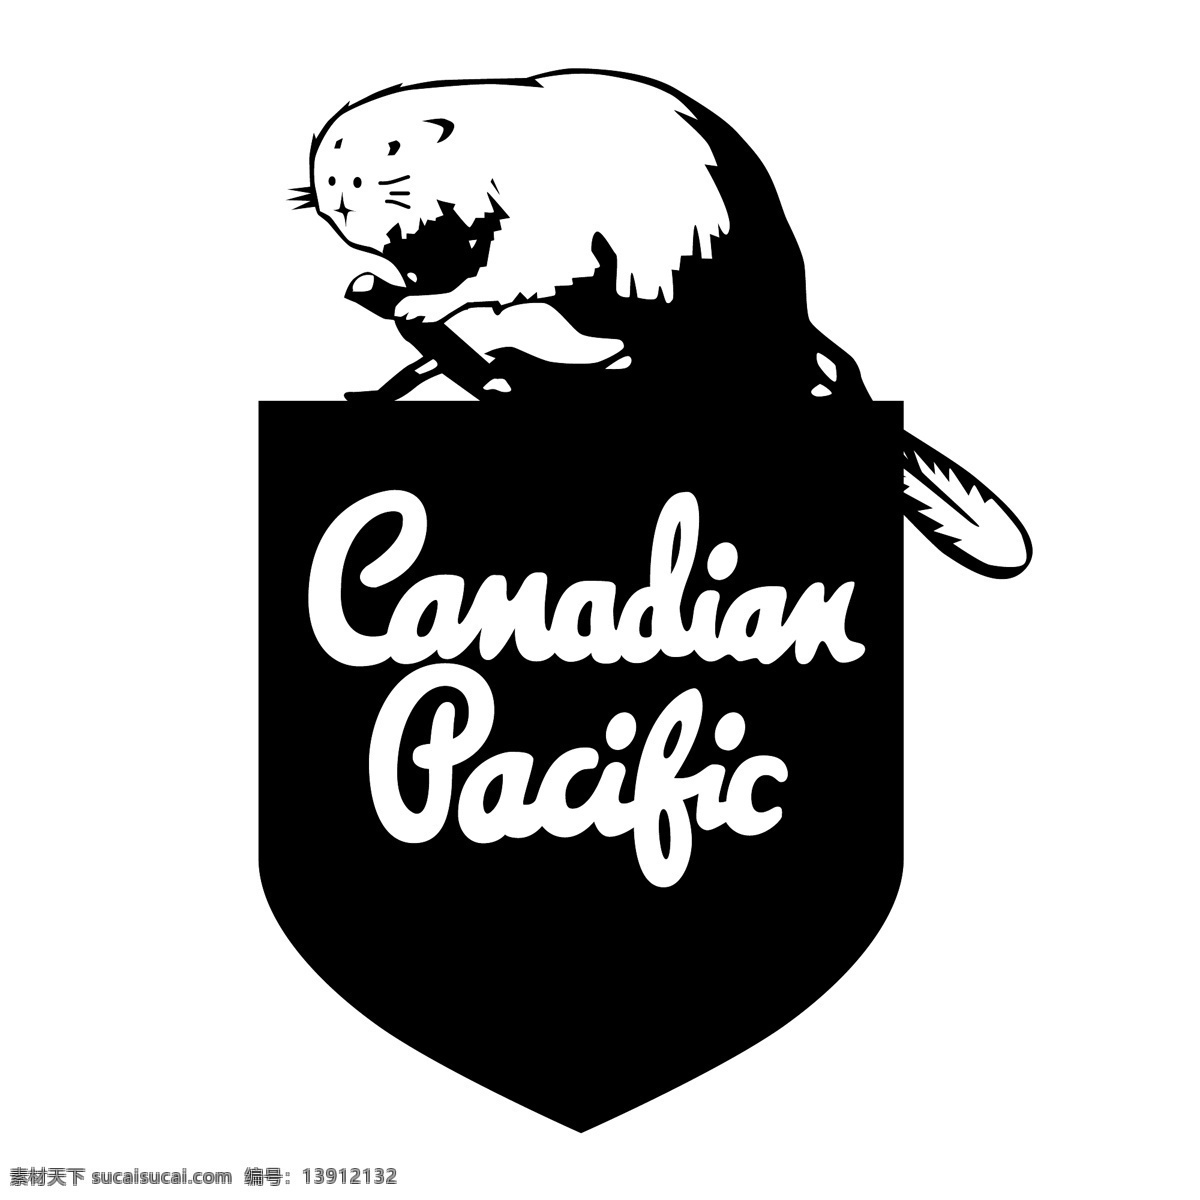 铁路 加拿大人 太平洋 加拿大 太平洋铁路 红色